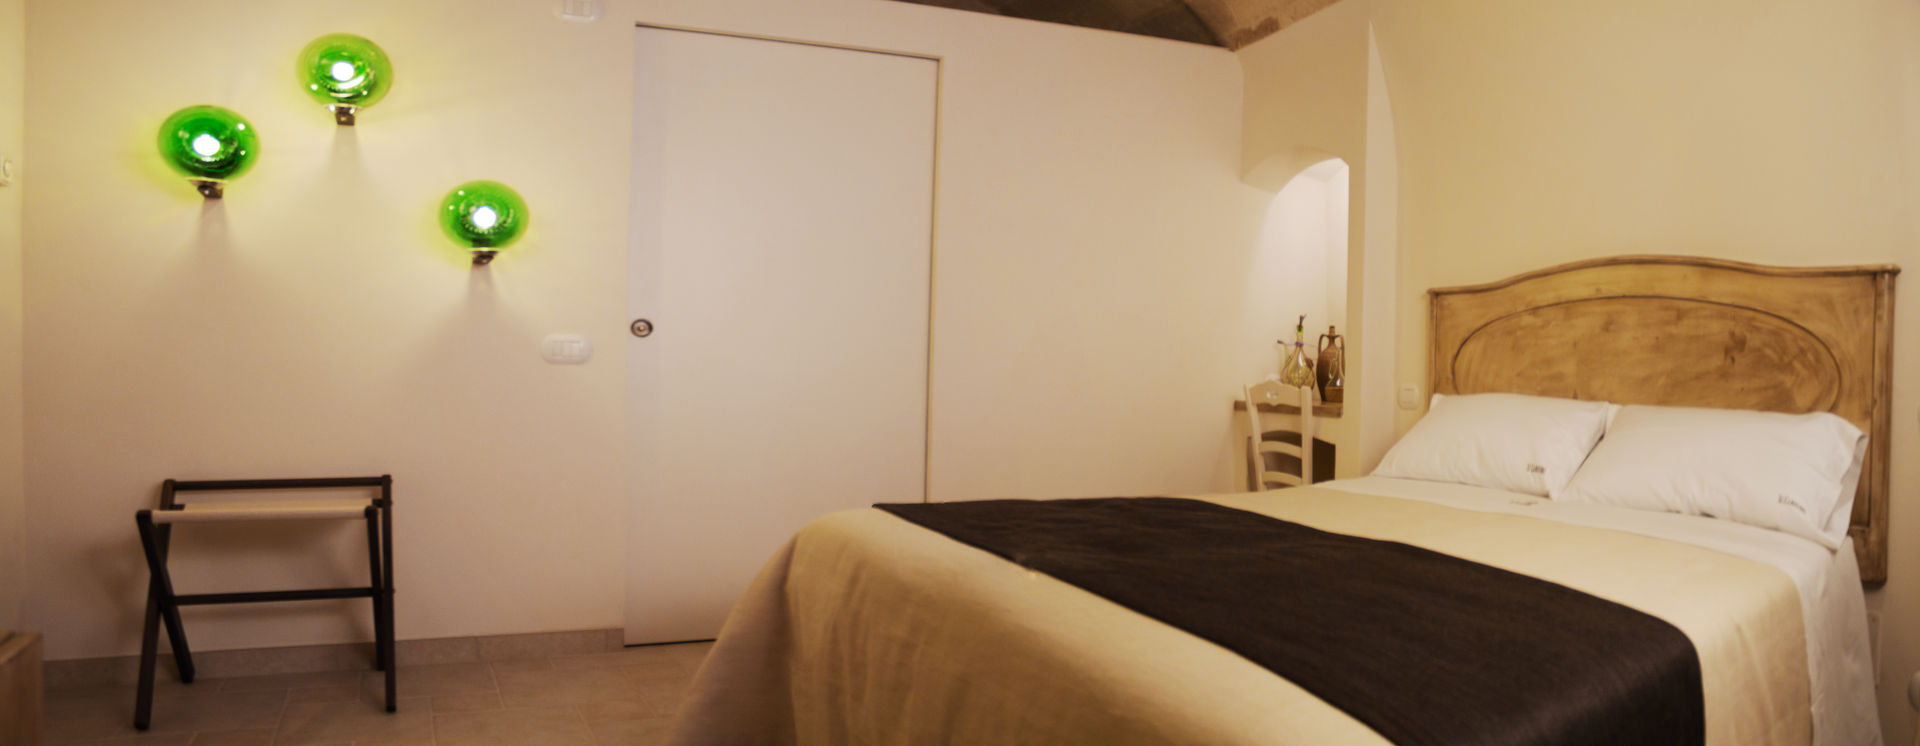 Il claustro_Albergo diffuso, B+P architetti B+P architetti Camera da letto in stile mediterraneo